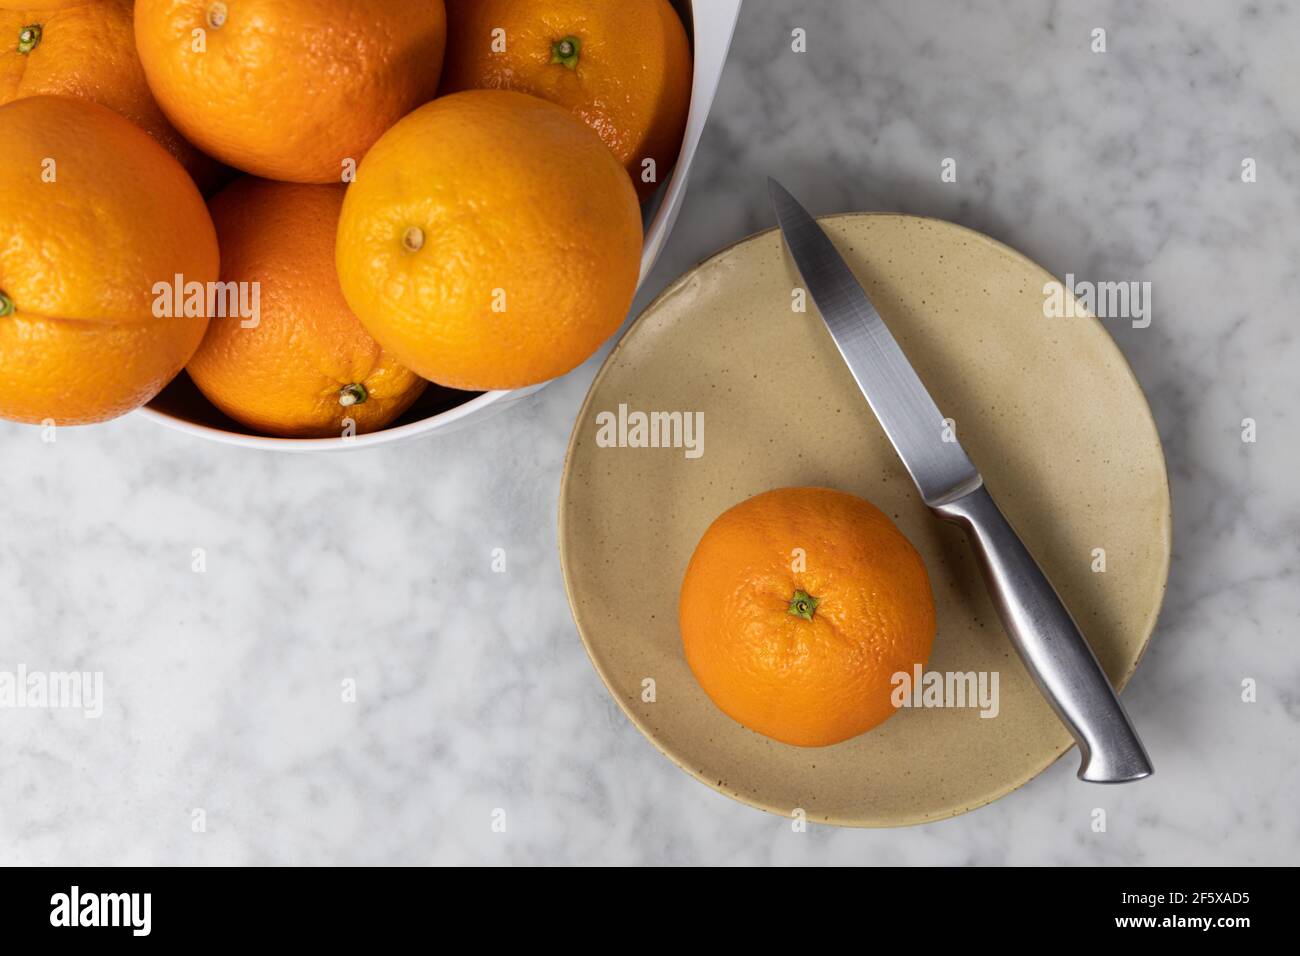 Orange mûr prêt à être mangé. Concept d'alimentation saine Banque D'Images